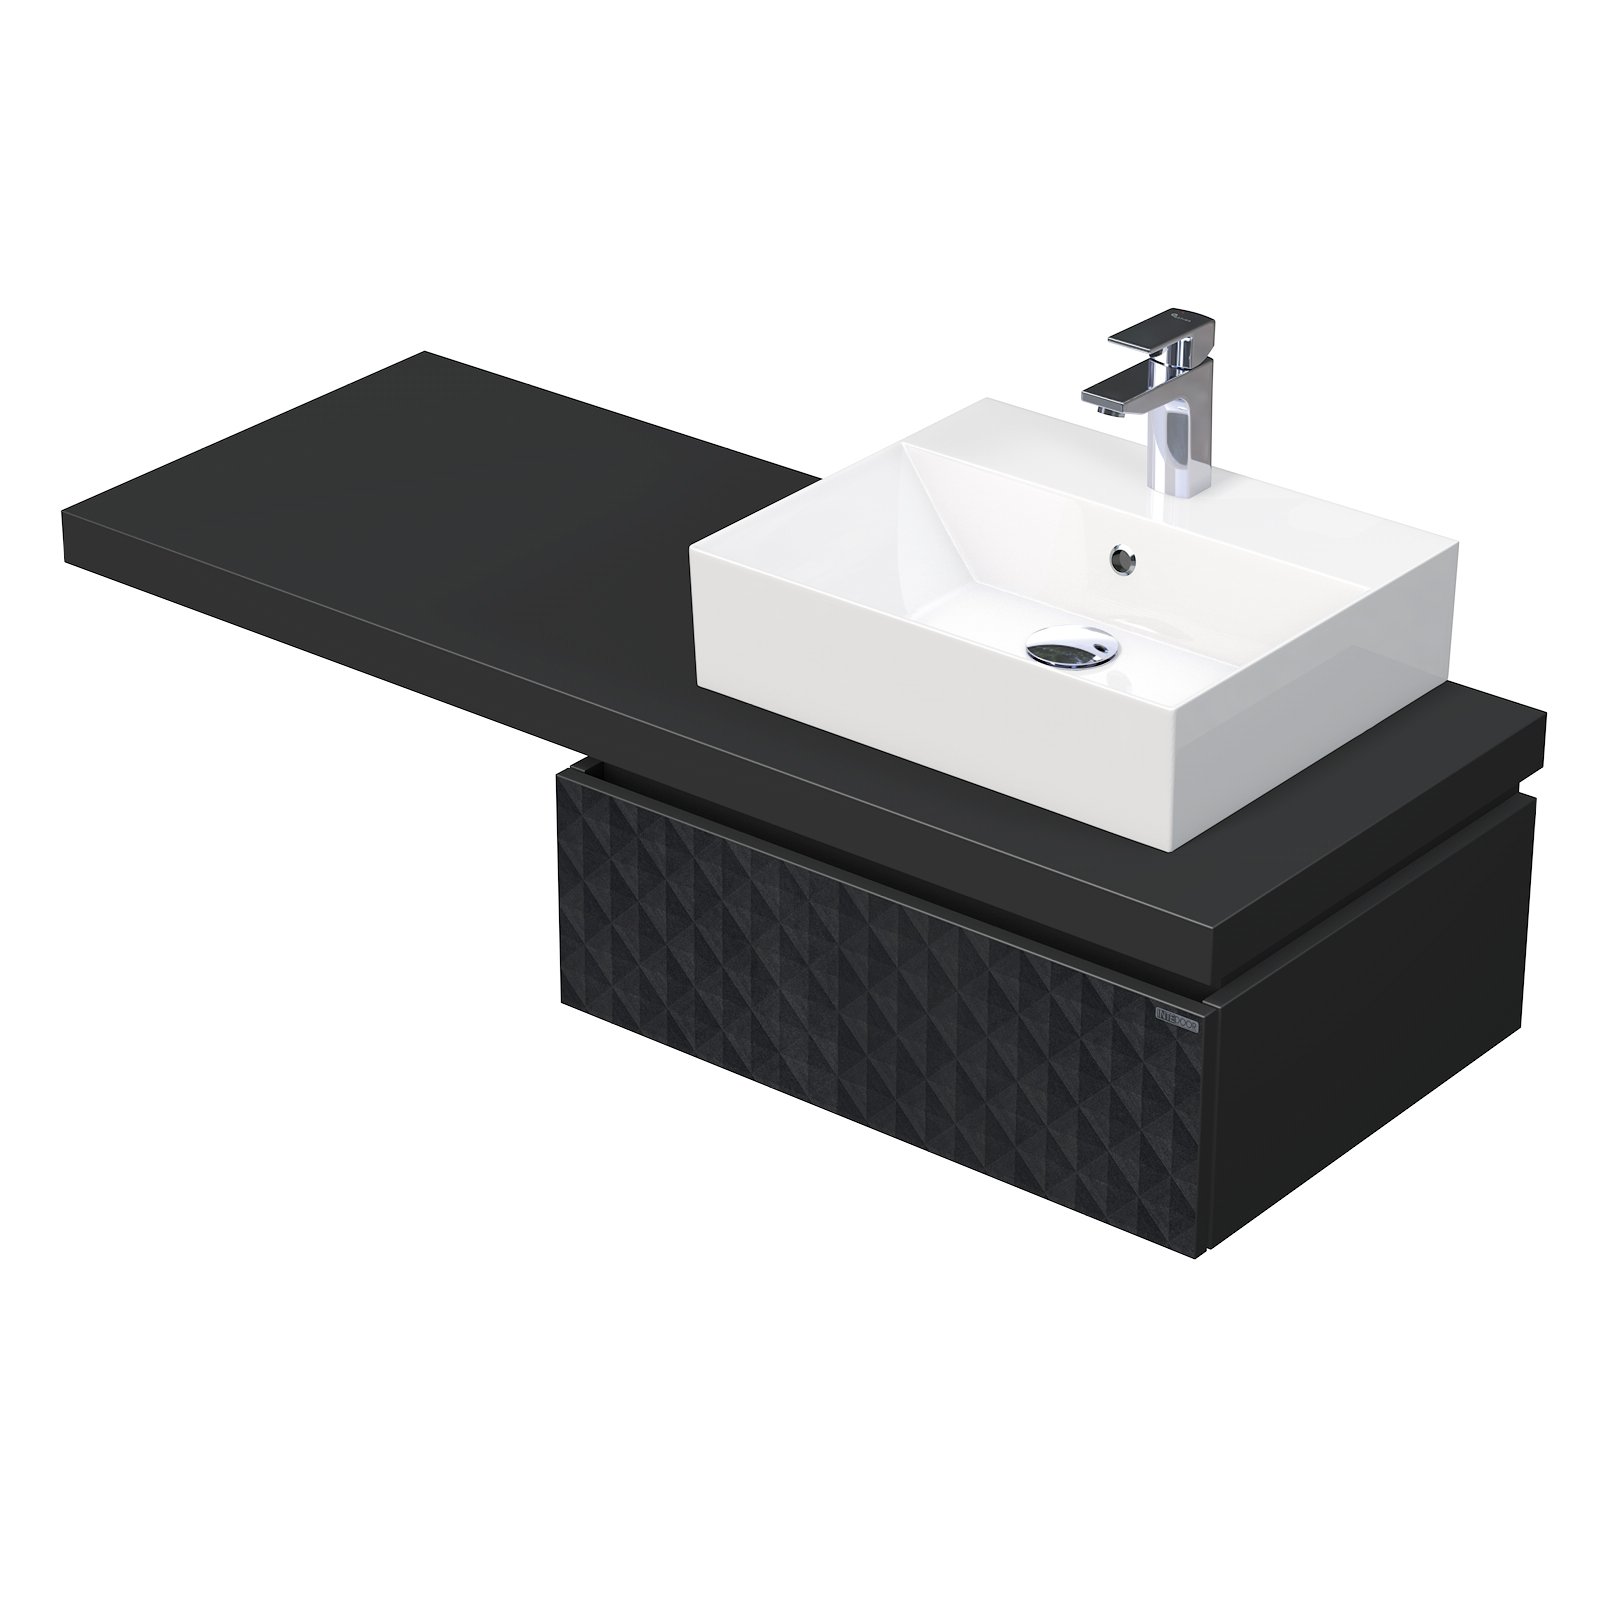 Desk 3D - skříňka 130 cm s umyvadlem na desku vpravo, 1 zásuvka, závěsná, černá DE 54 3D 130 P STORM 1Z U129